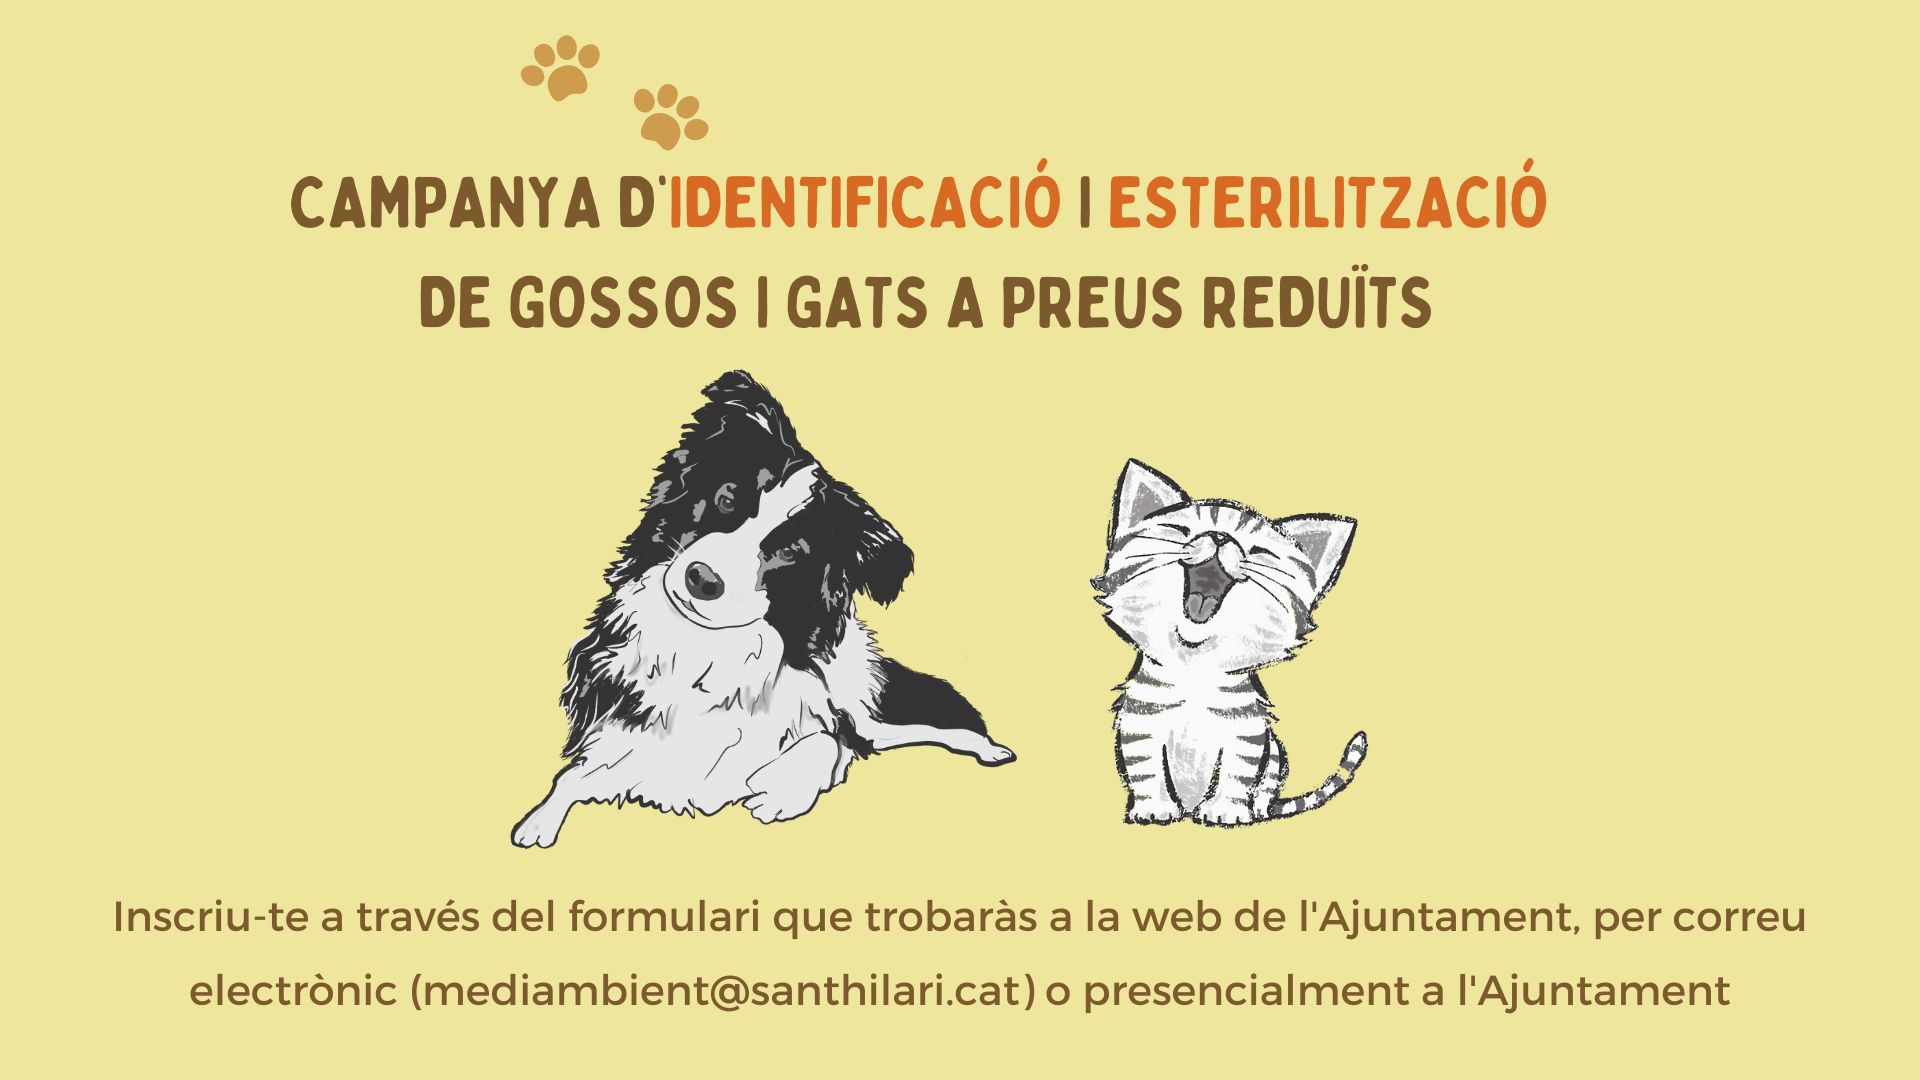 Campanya d’identificació i esterilització d’animals de companyia a preus reduïts